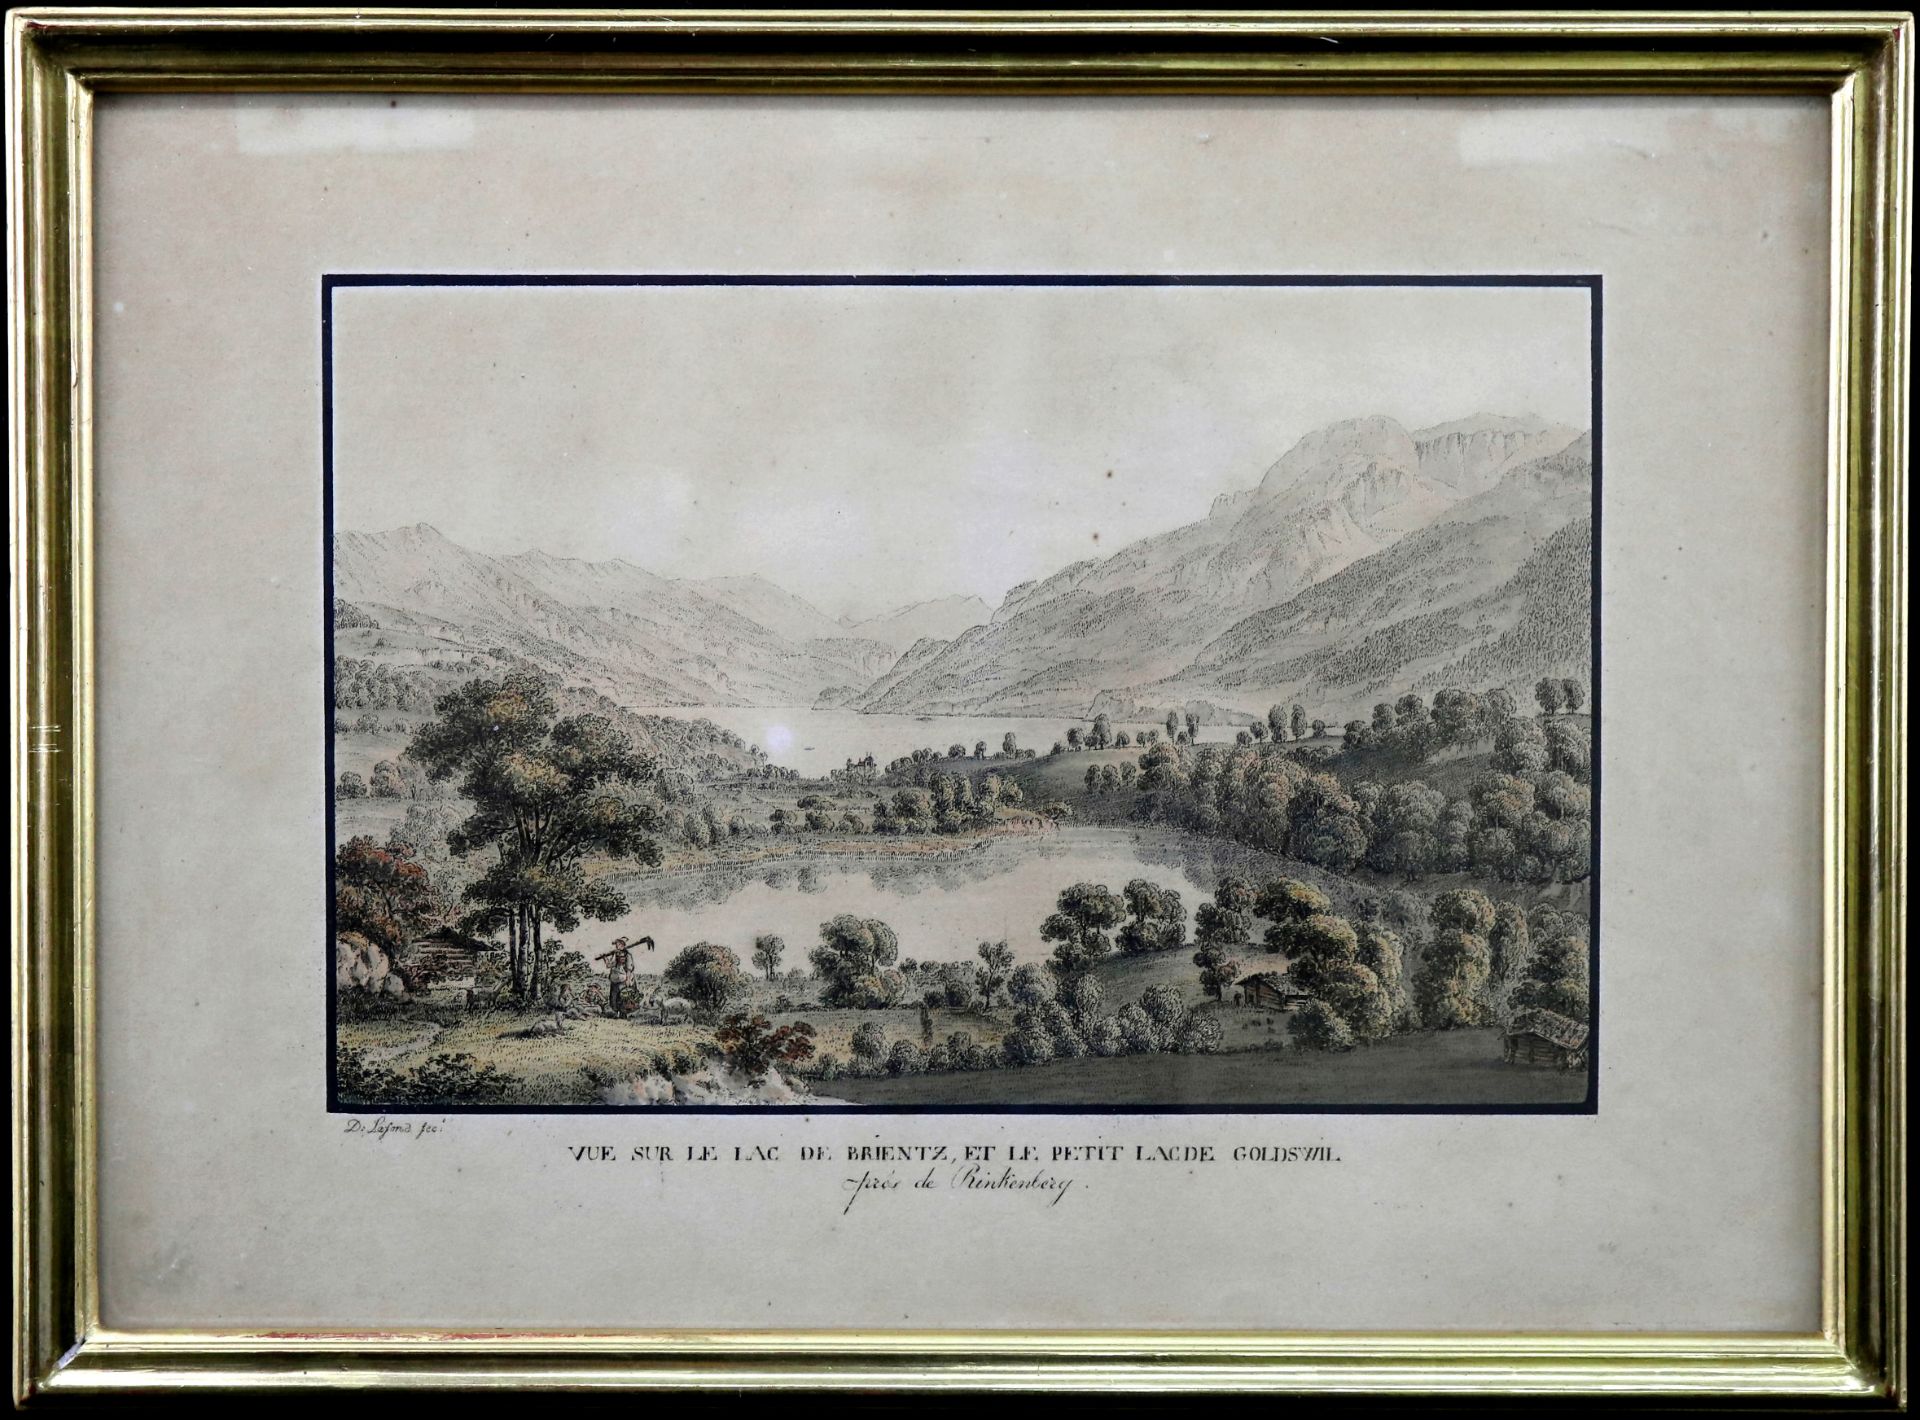 Kupferstich Simon Daniel Lafond (*1763-1831) "Vue sur le Lac de Brientz, et le petit Lac de Goldswil